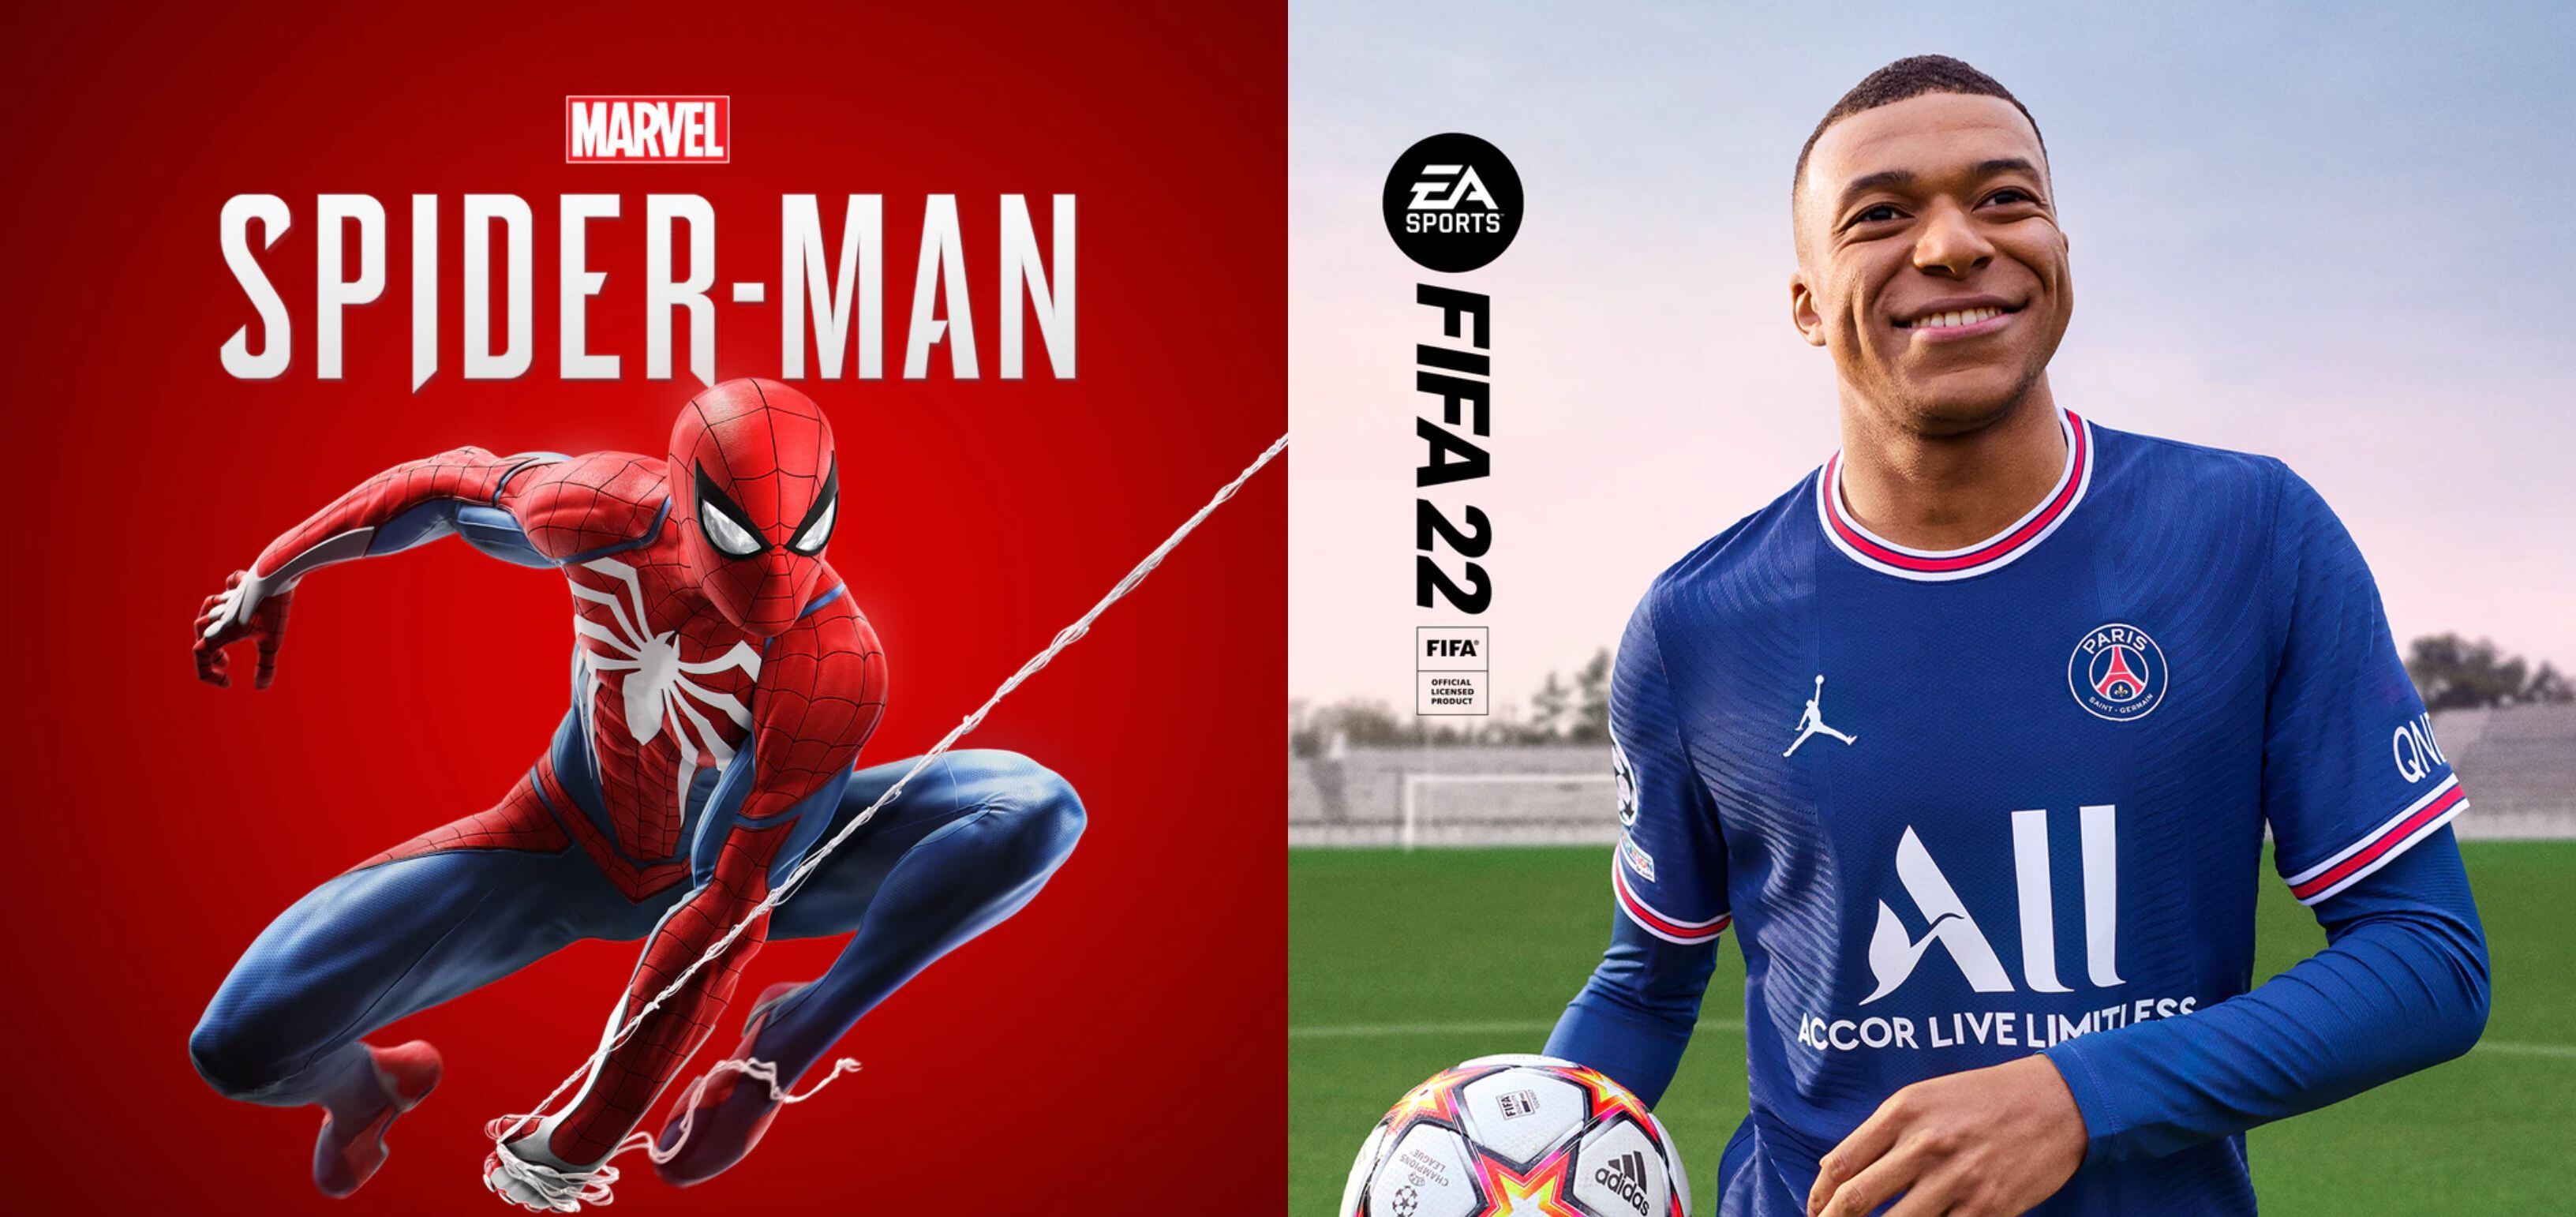 Juegos populares como Marvel's Spiderman y FIFA 22 están en descuento en las consolas de Sony.